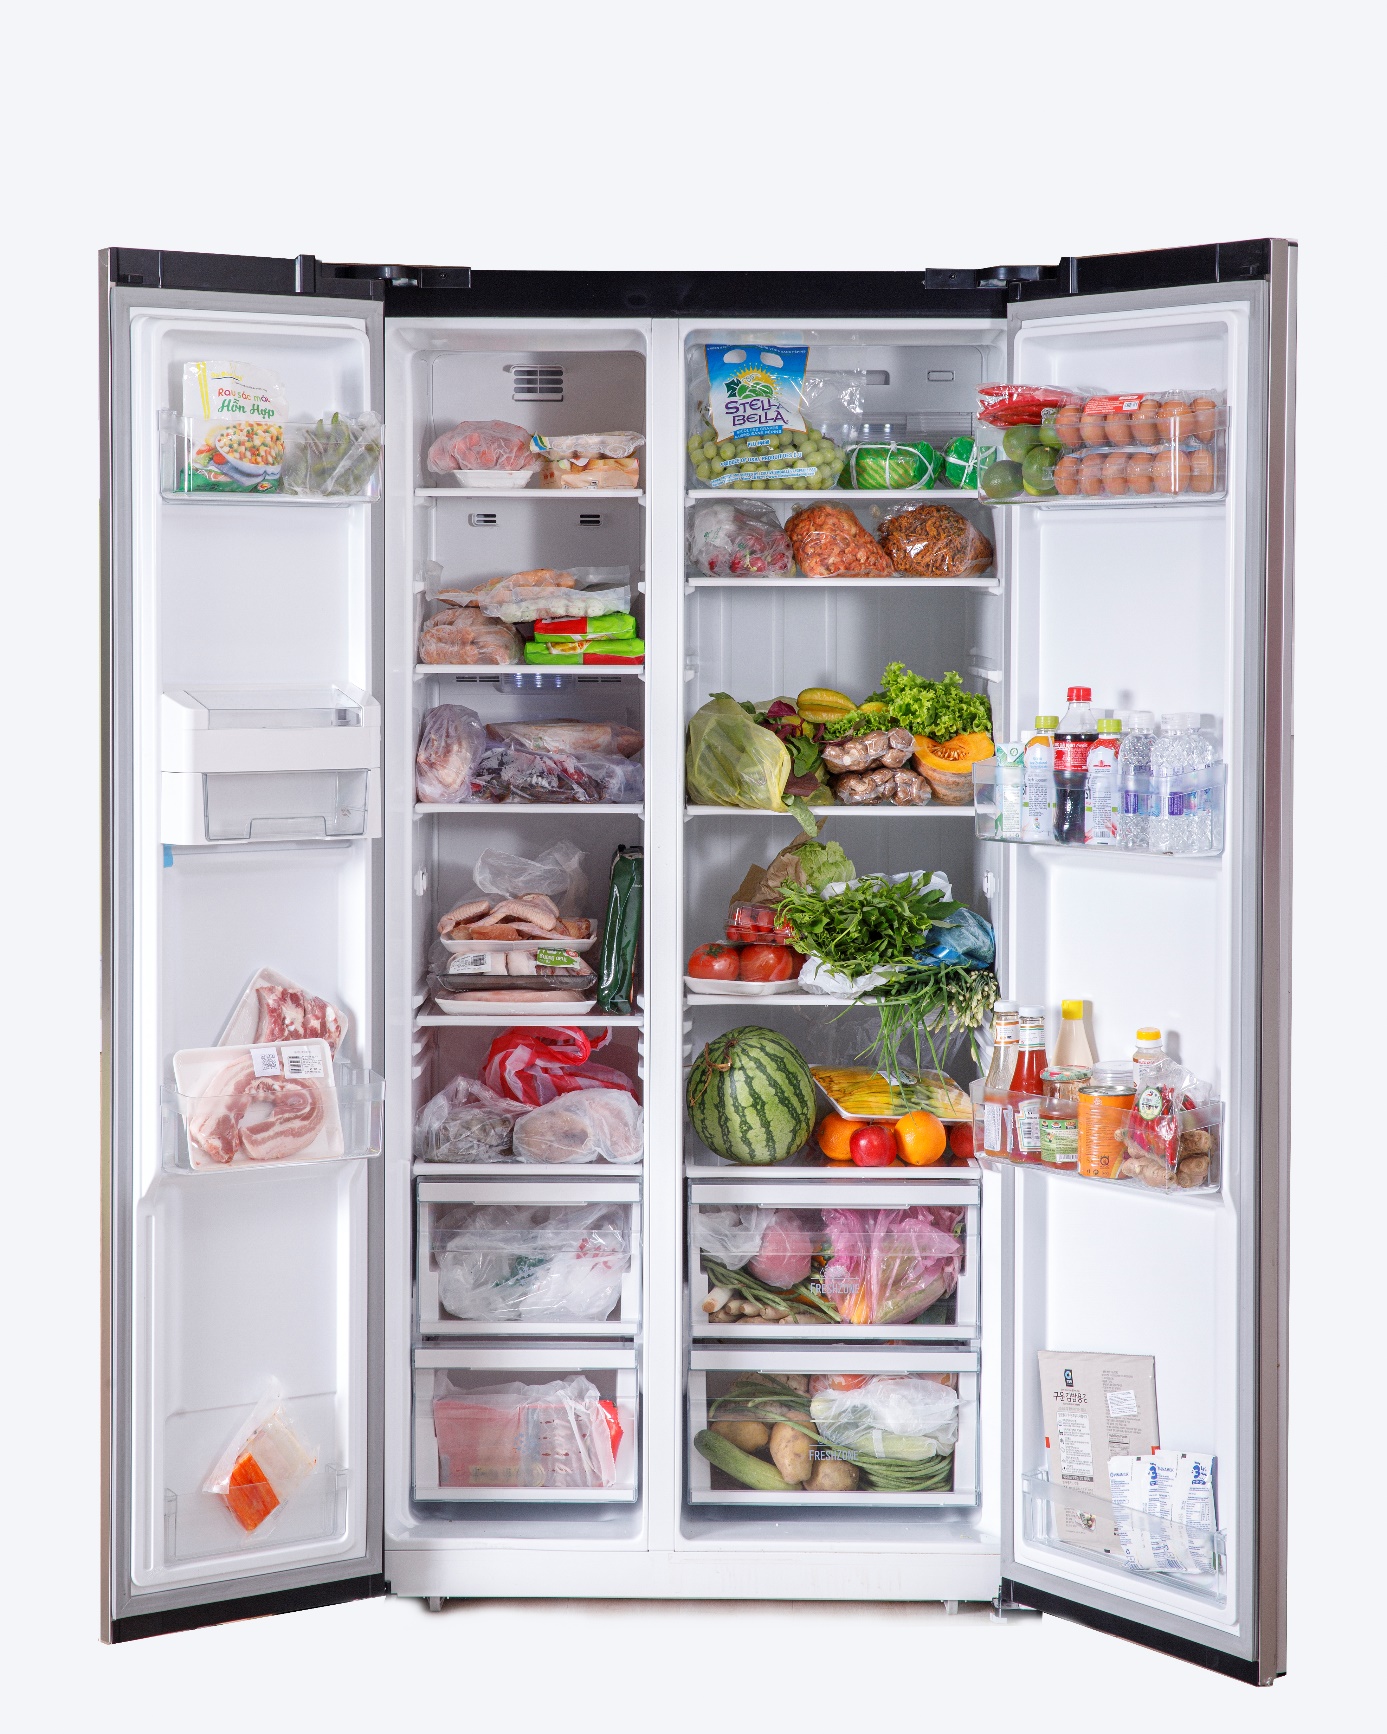 Sai lầm cần tránh khi sử dụng tủ lạnh ngày hè - Ảnh 1.